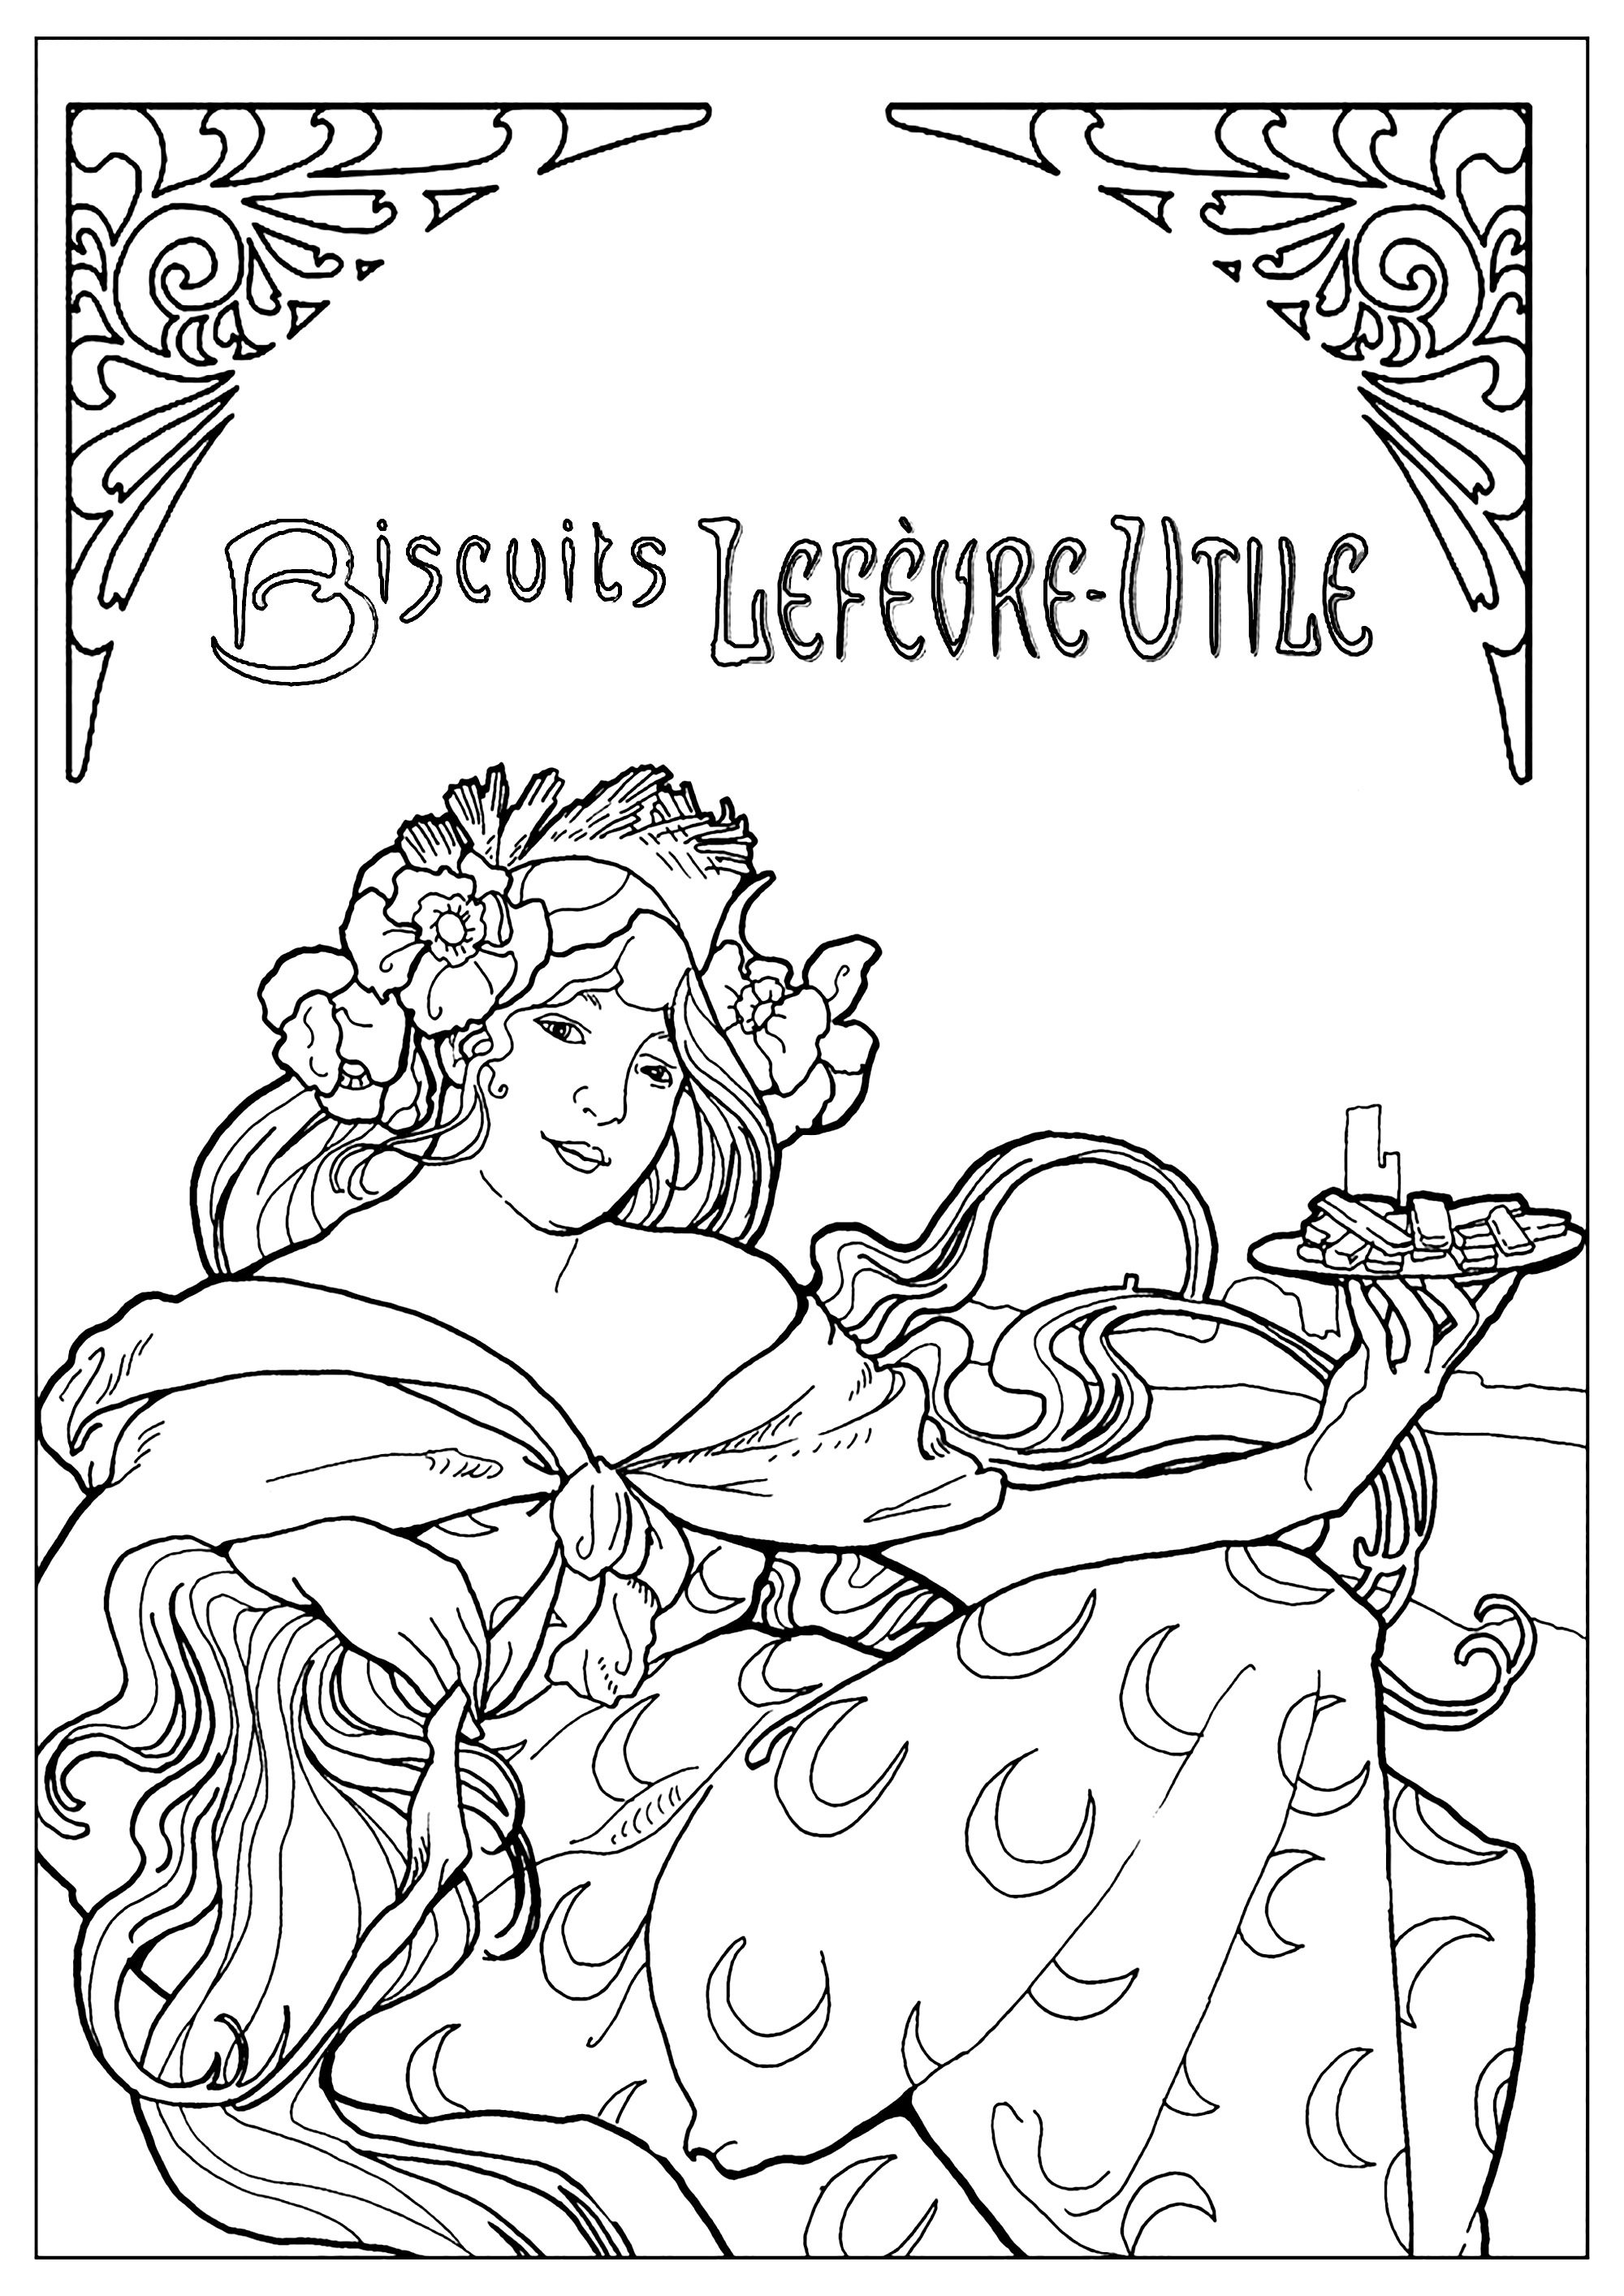 Coloração criada a partir de um cartaz publicitário dos biscoitos Lefèvre-Utile (L. U) de Alfons Mucha (1896)Este cartaz é típico do estilo Arte Nova. Um exemplar da época pode ser visto no Museu Carnavalet (musée de l